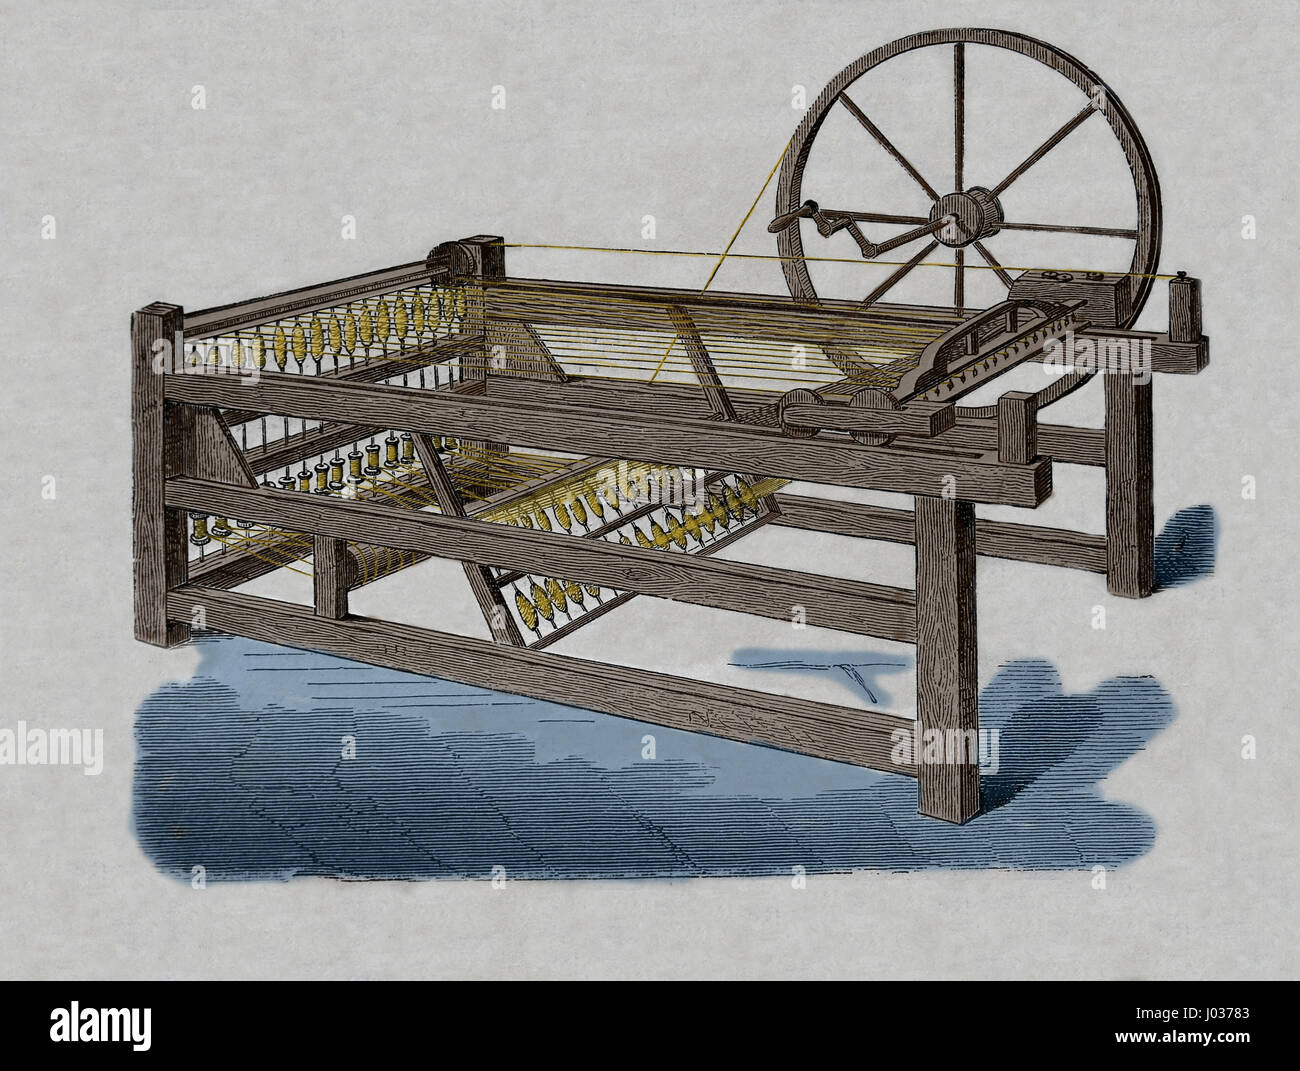 Industrielle Revolution. Hargreaves ist Spinning Jenny, in den 1760er Jahren erfunden. Gravur, Nuestro Siglo, 1883. Spanische Ausgabe. Stockfoto